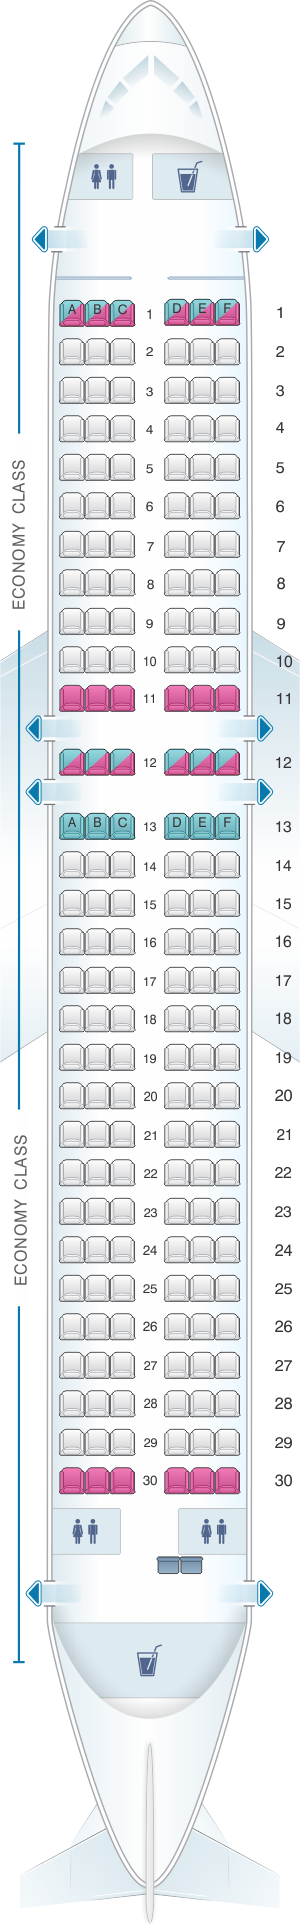 Seat Map Indigo Airbus A320 Seatmaestro